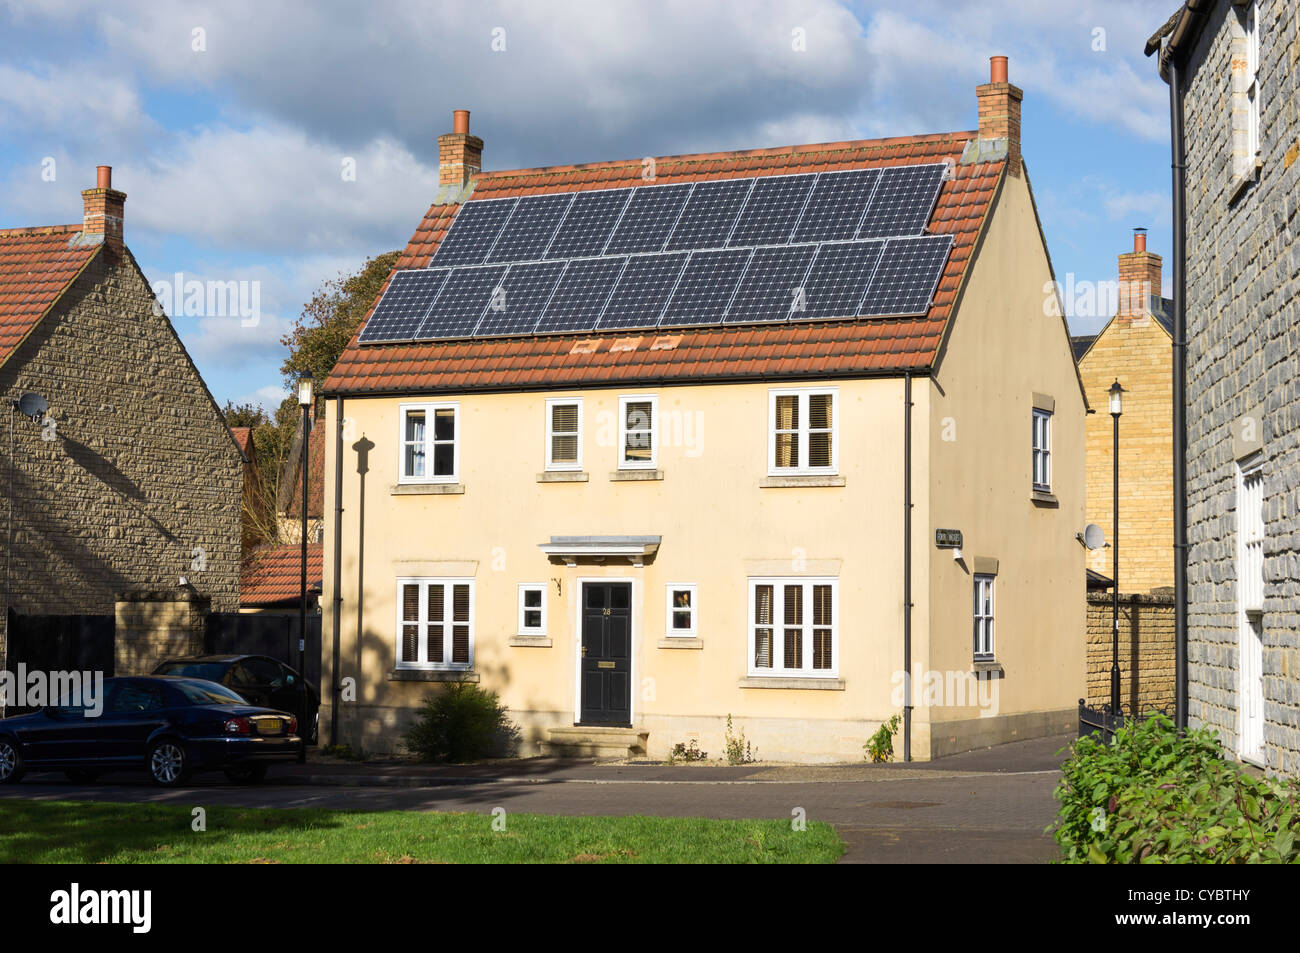 - Des panneaux solaires sur une maison d'habitation, England, UK Banque D'Images